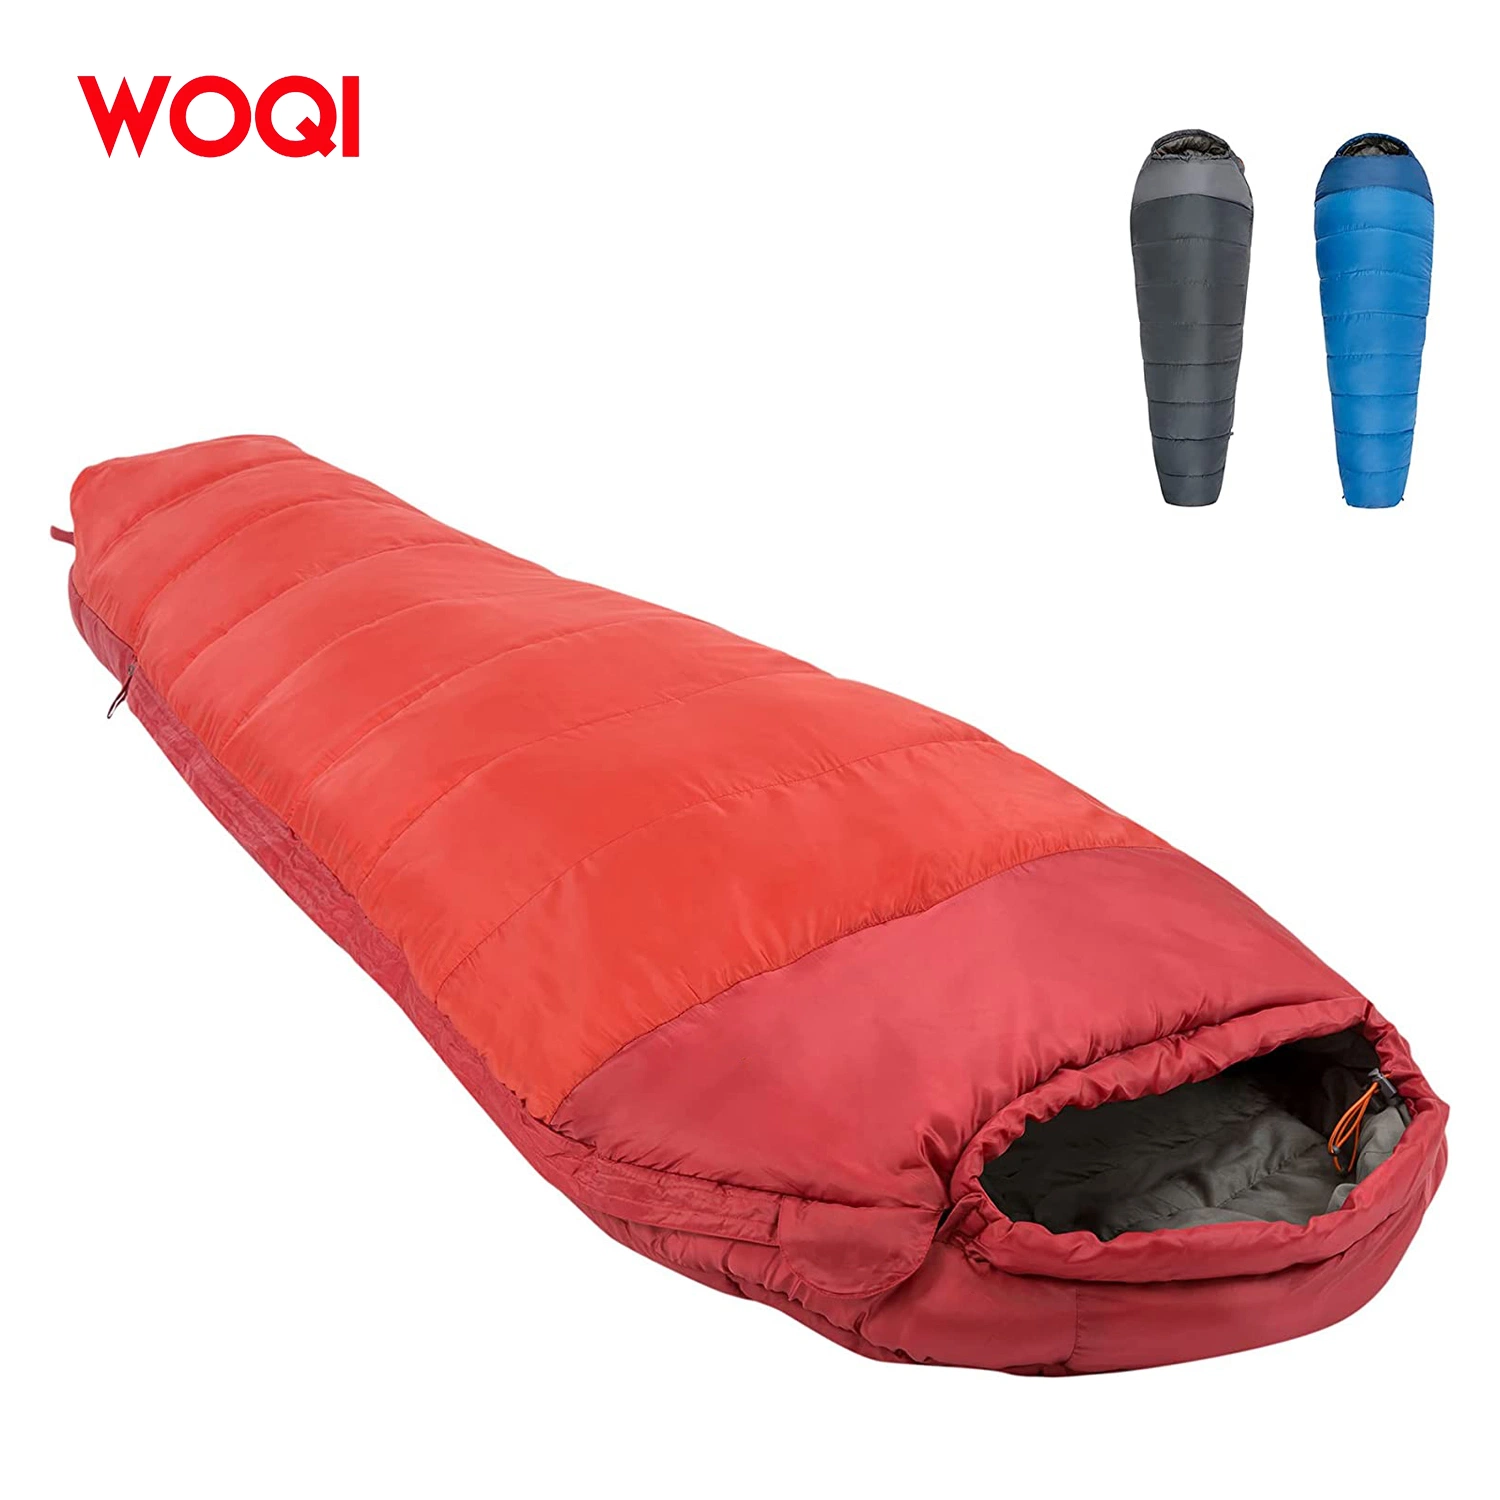 Sac de couchage de camping adulte léger et imperméable pour la randonnée en plein air, modèle momie.